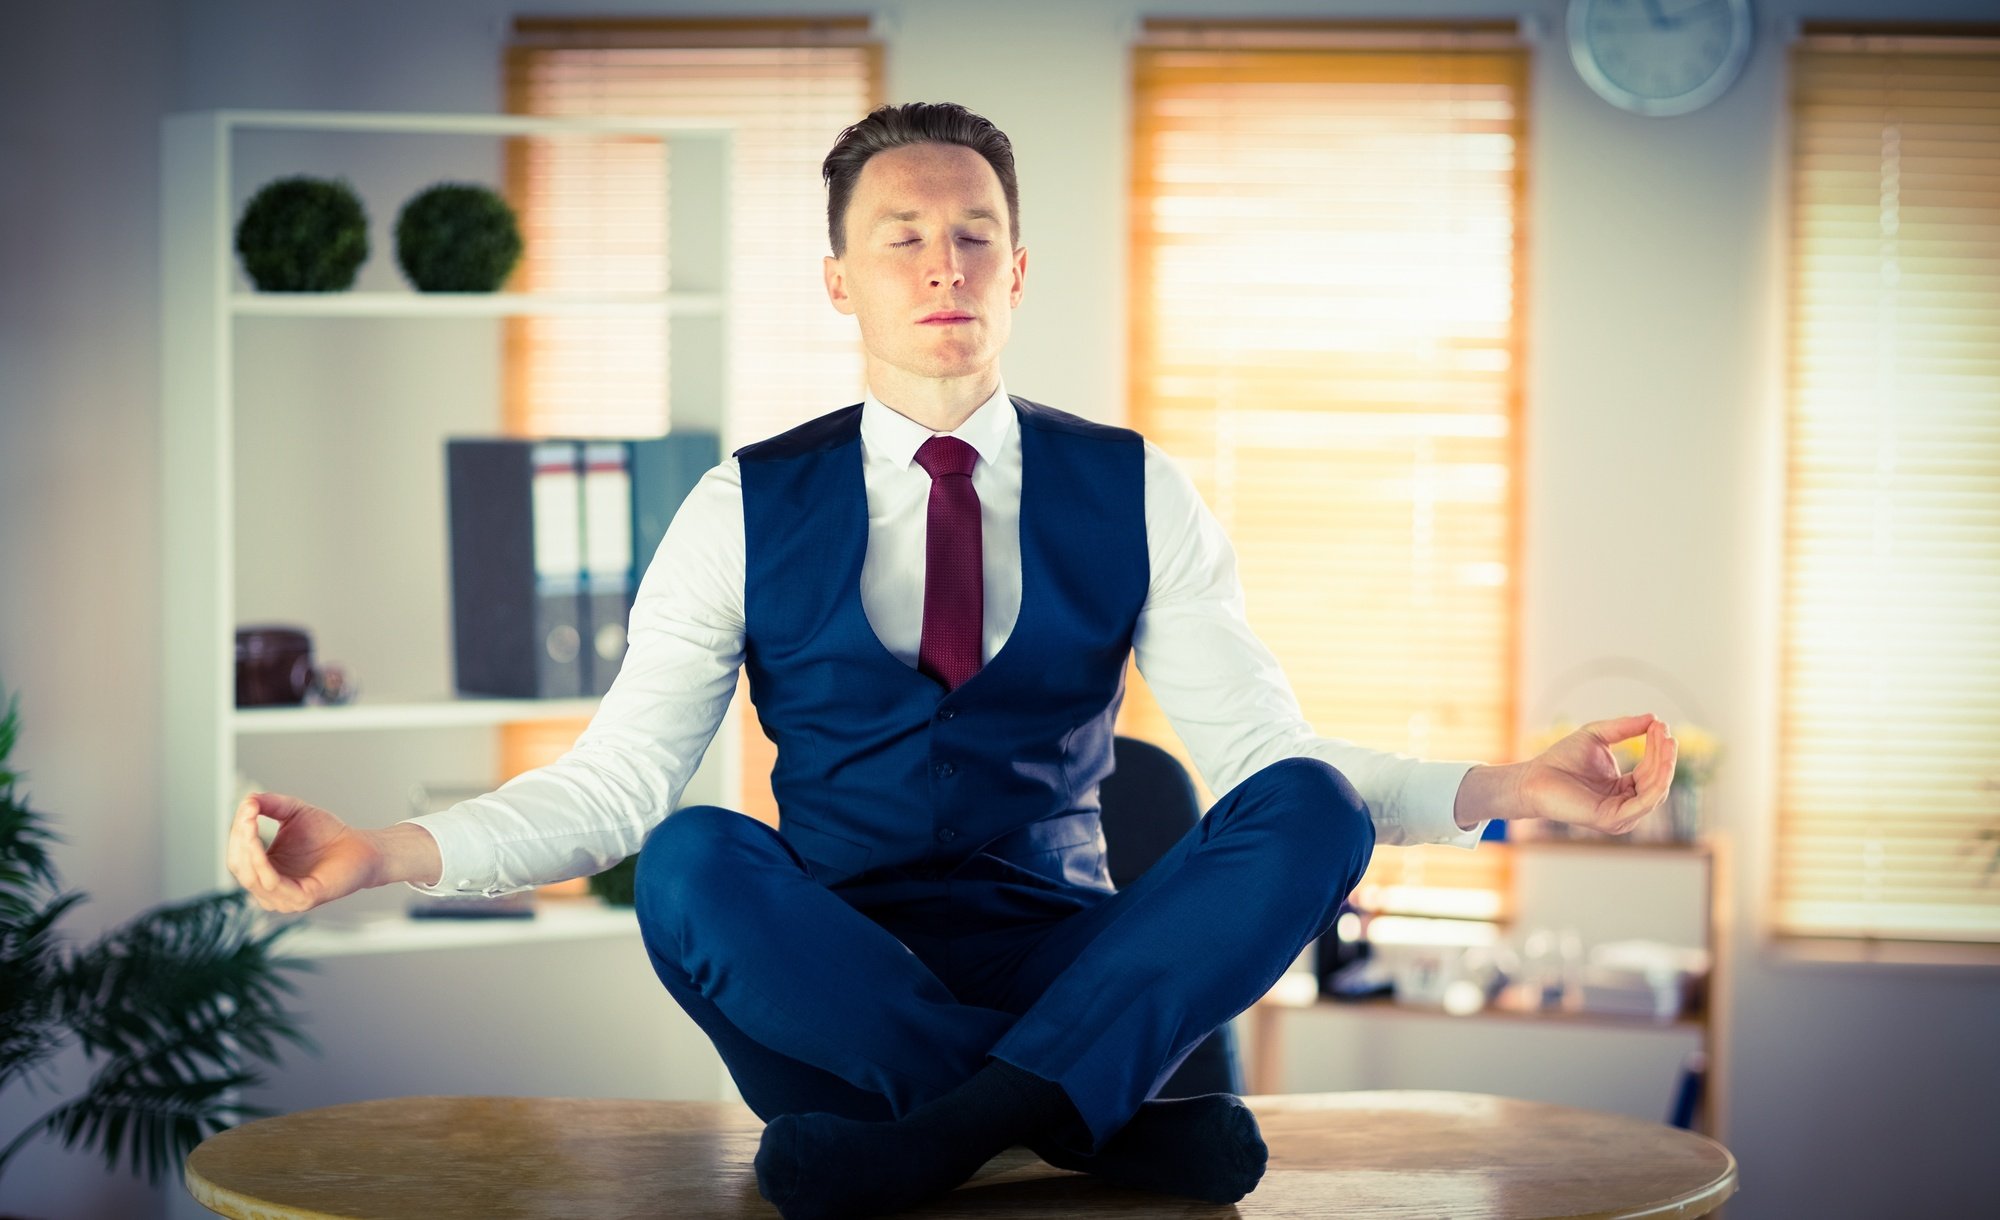 Снимать головной убор в помещении мужчинам. Бизнесмен медитирует. Человек в костюме медитирует. Спокойный бизнесмен. Поза бизнесмена.